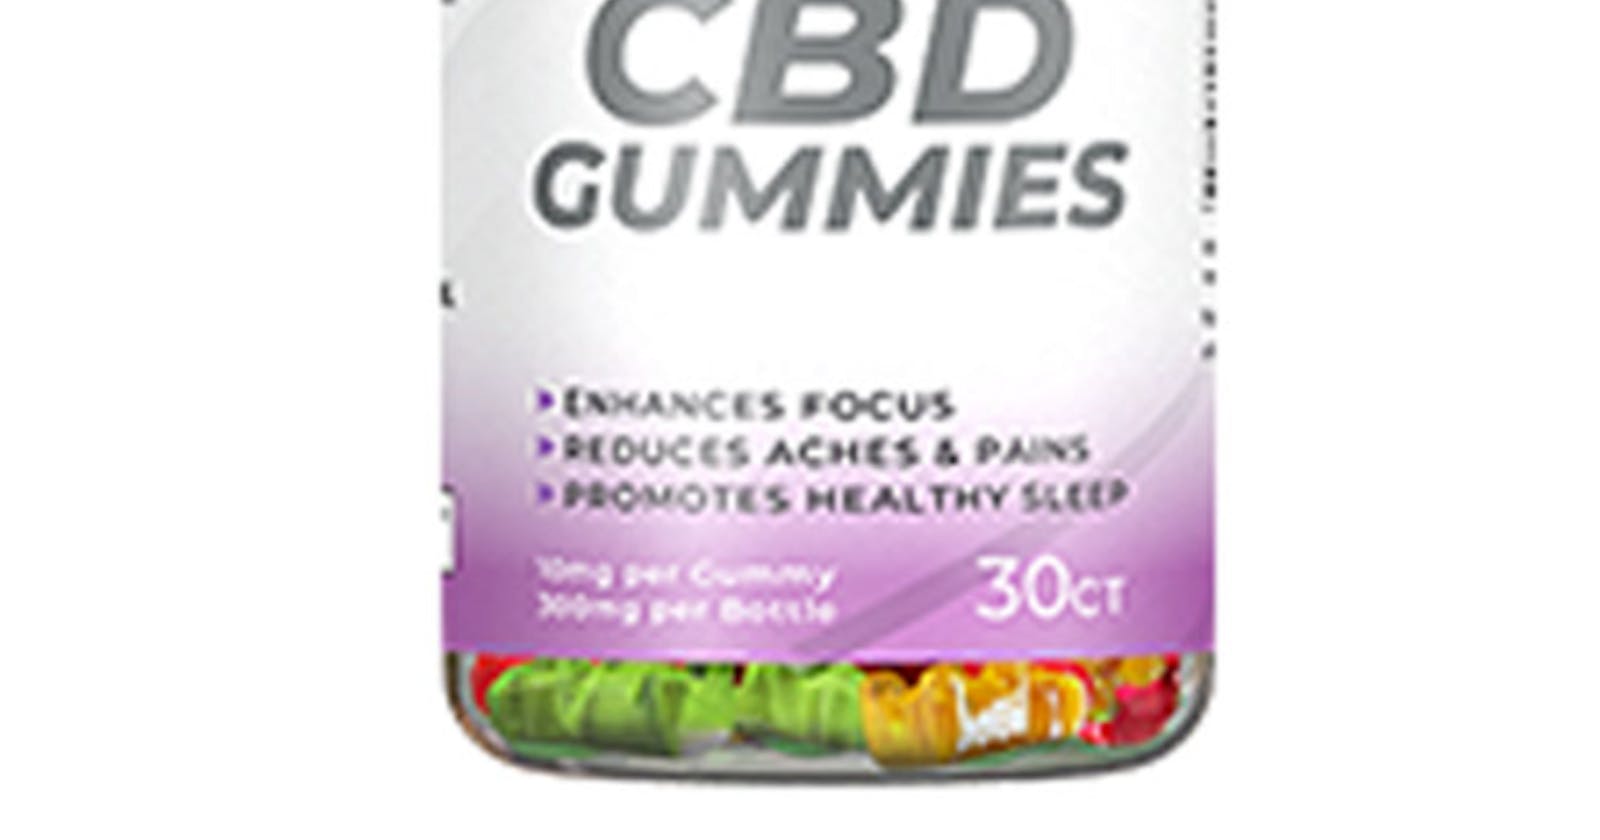 Tasty Stress Relief- Amaze CBD Gummies